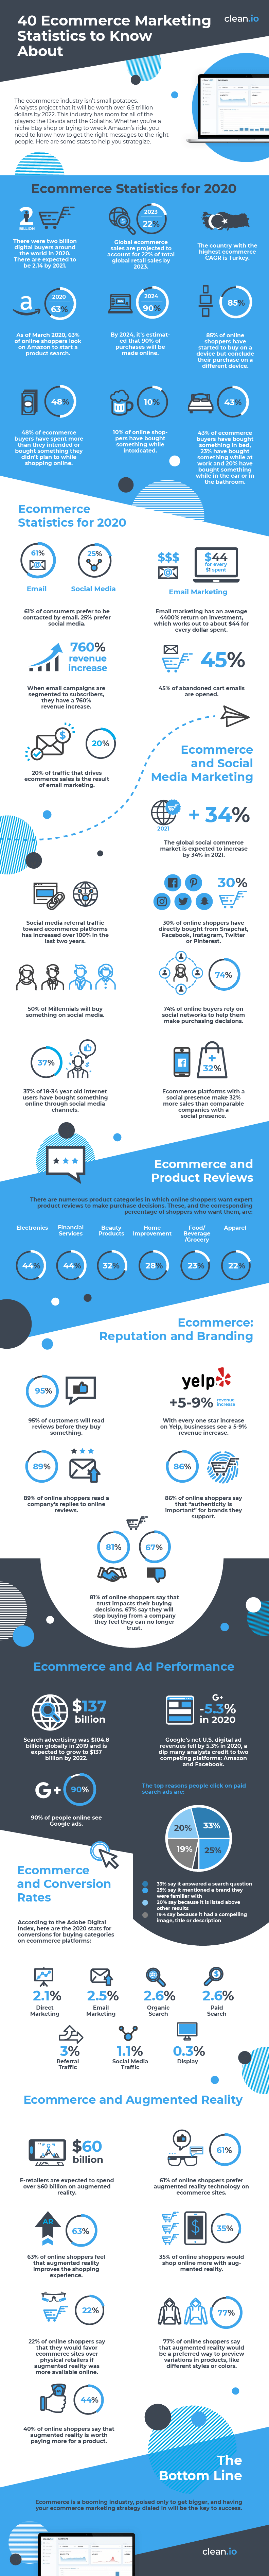 infographic-ecommerce-01 (1)